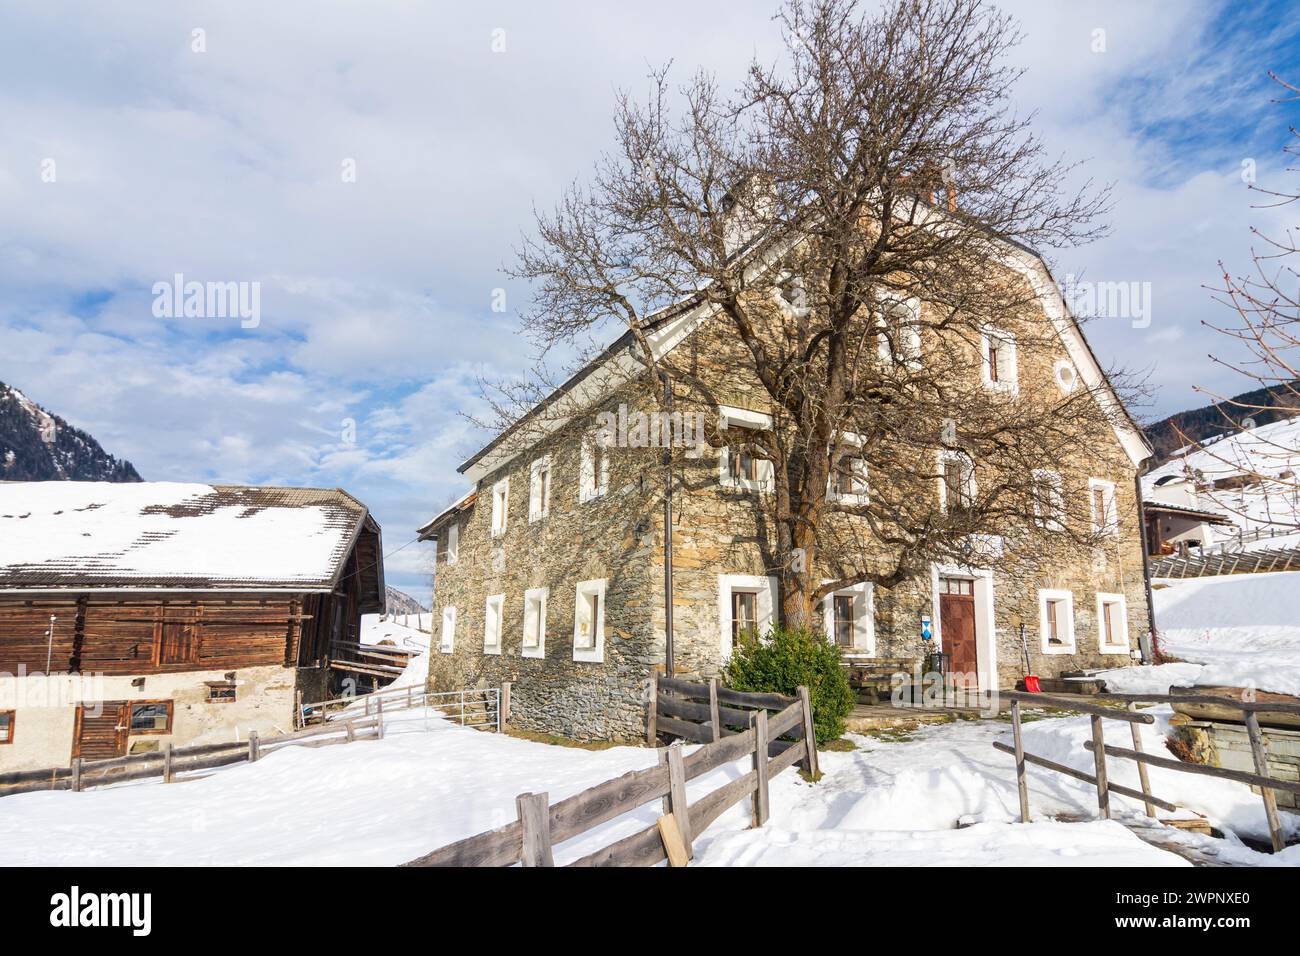 Rauris, inn Kirchenwirt in hamlet Bucheben, snow in Pinzgau, Salzburg, Austria Stock Photo